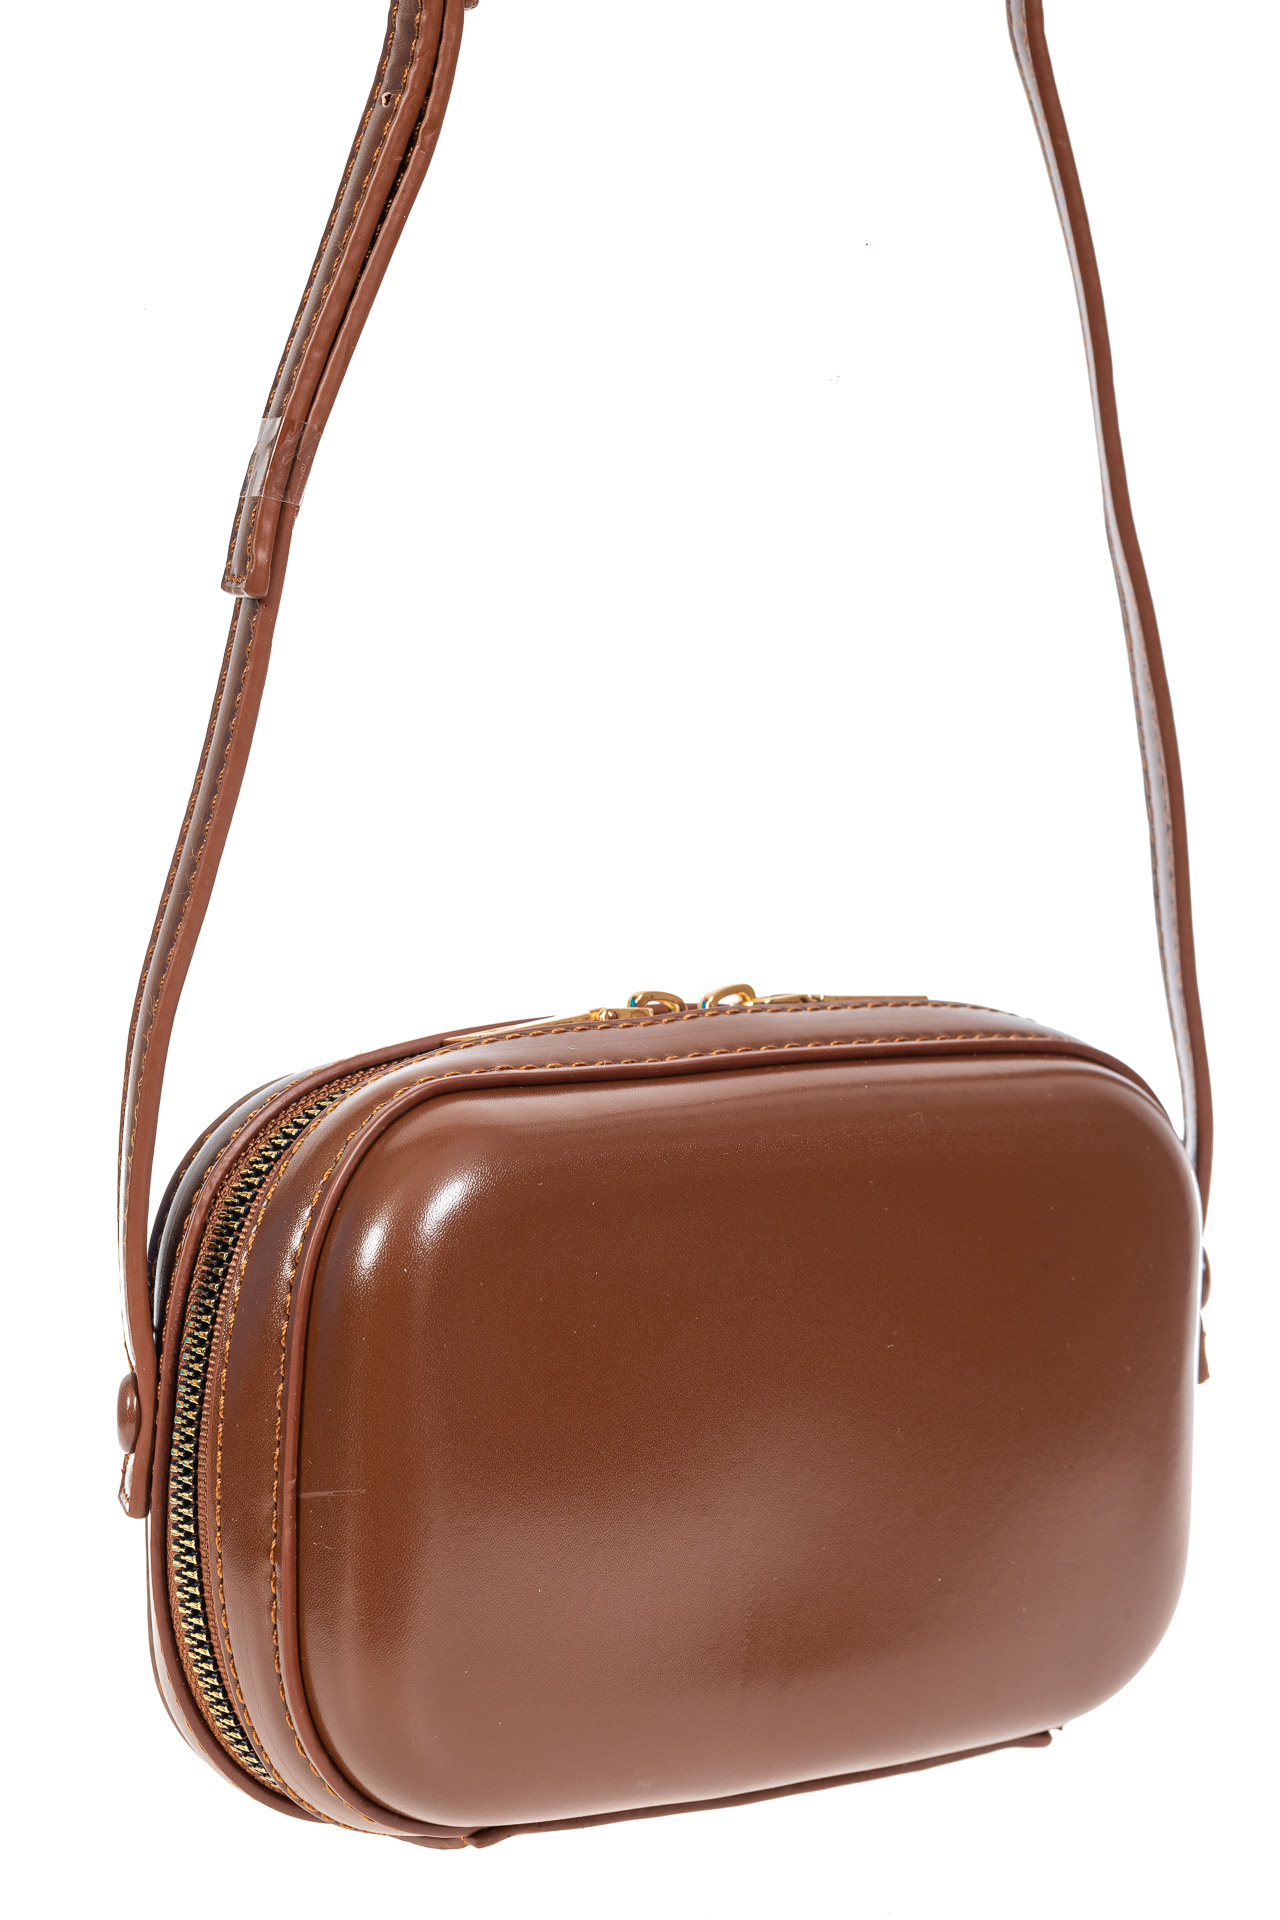 Женская сумка-малышка с жёстким каркасом из искусственной кожи, цвет коричневый